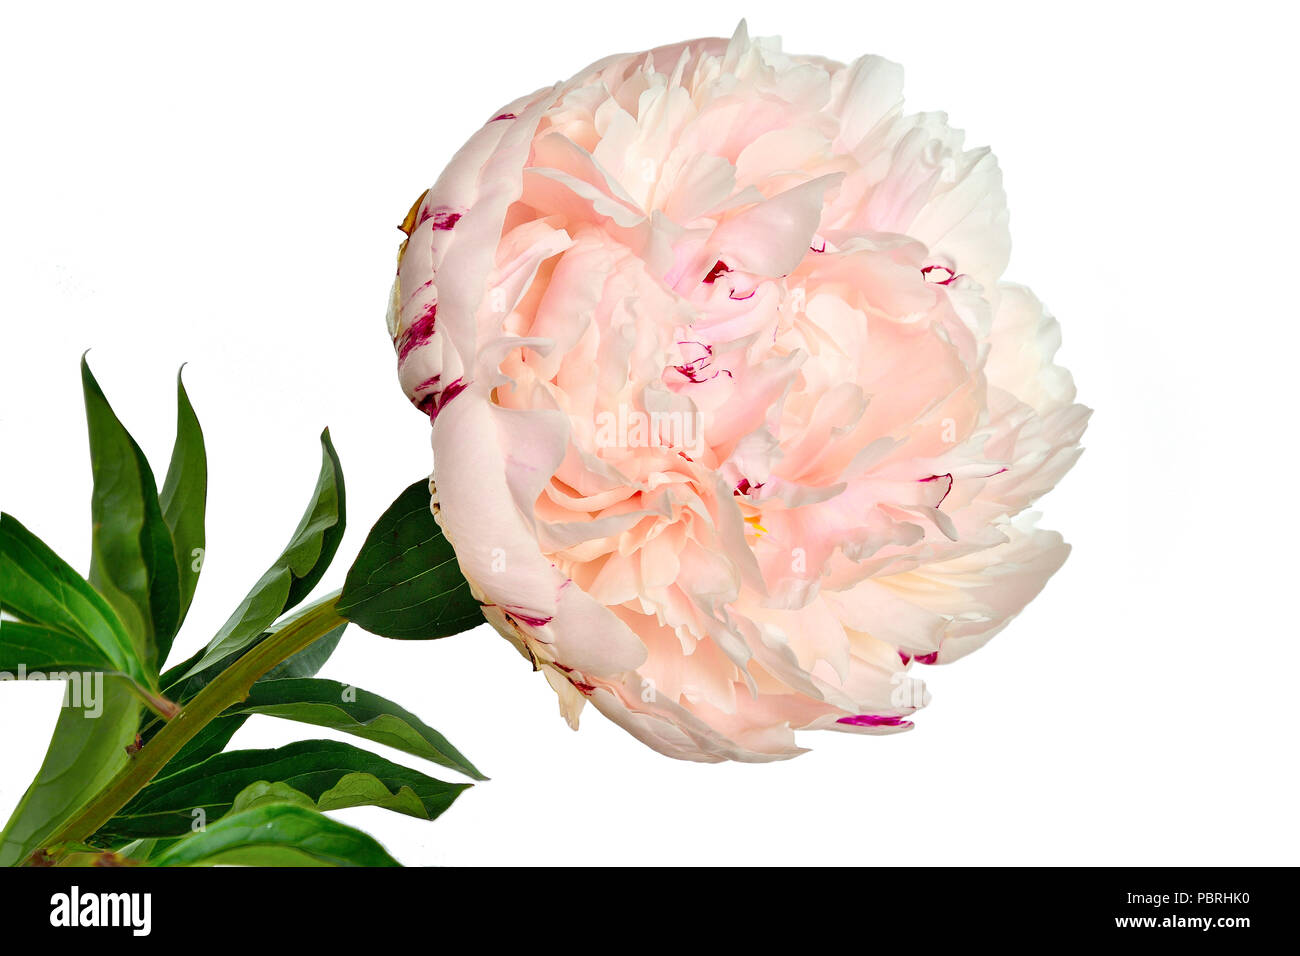 Schönen sanften Weiß-Rosa Pfingstrose in der Nähe auf einem weißen Hintergrund mit grünen Blättern getrennt. Blumen mit zarten Blüten und zarten Aroma. Konzept Stockfoto